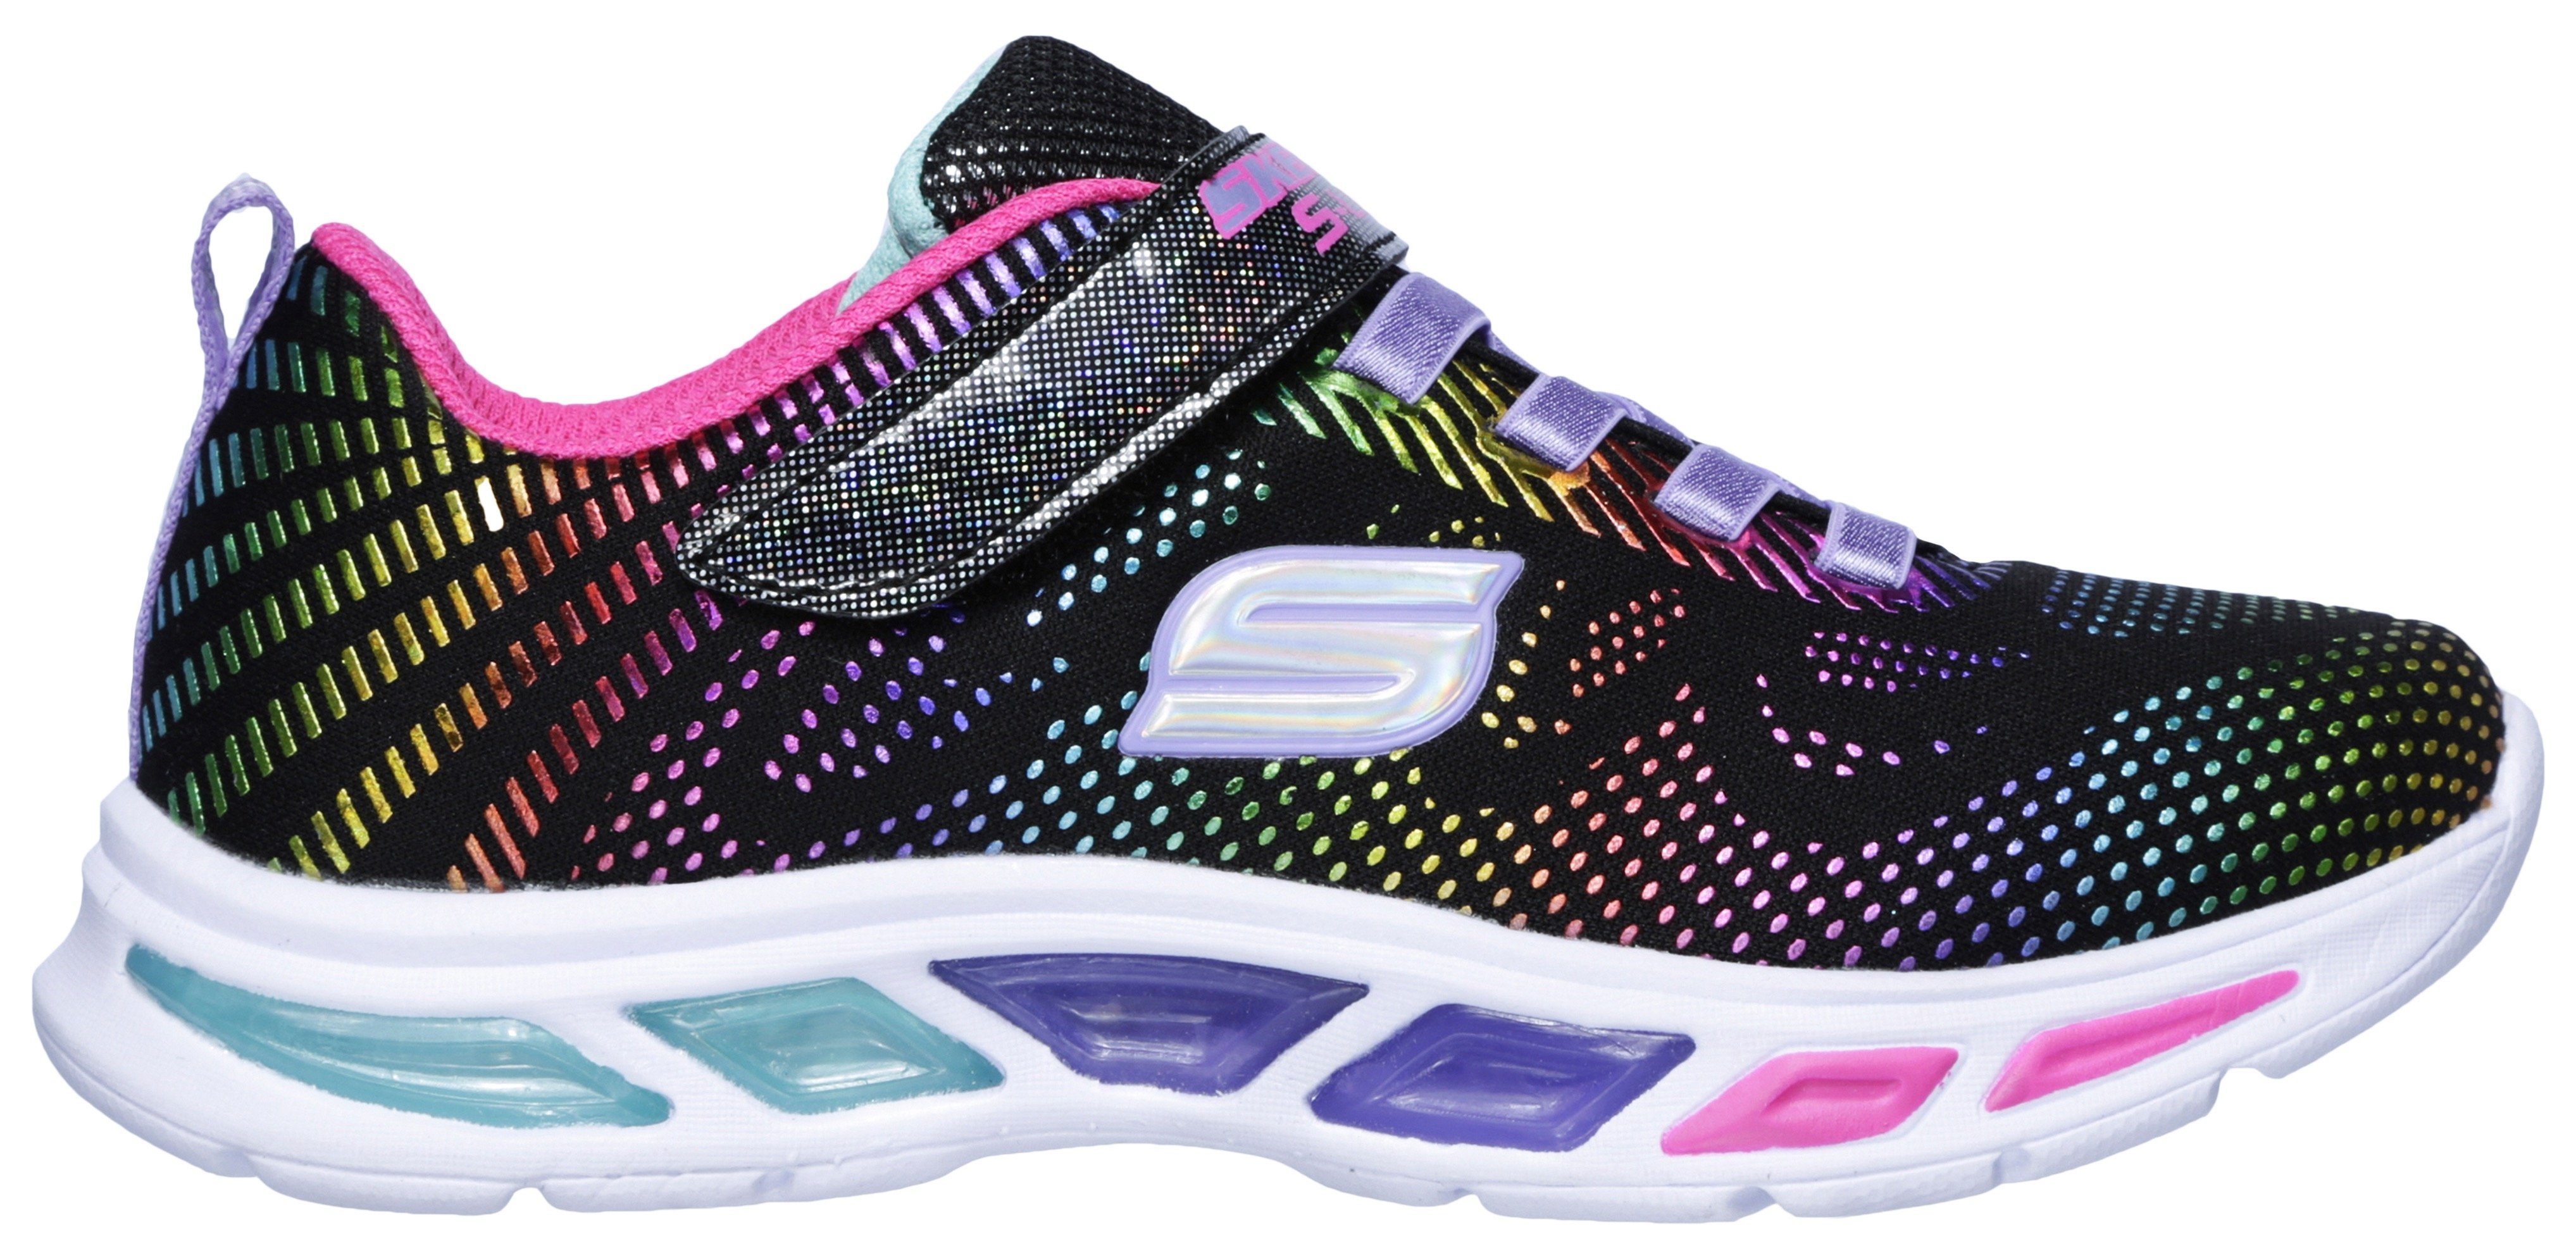 Skechers Kids Blinkschuh Sneaker Laufsohle mit blinkender LITEBEAMS-Gleam N`Dream schwarz-regenbogenfarben-glitzer